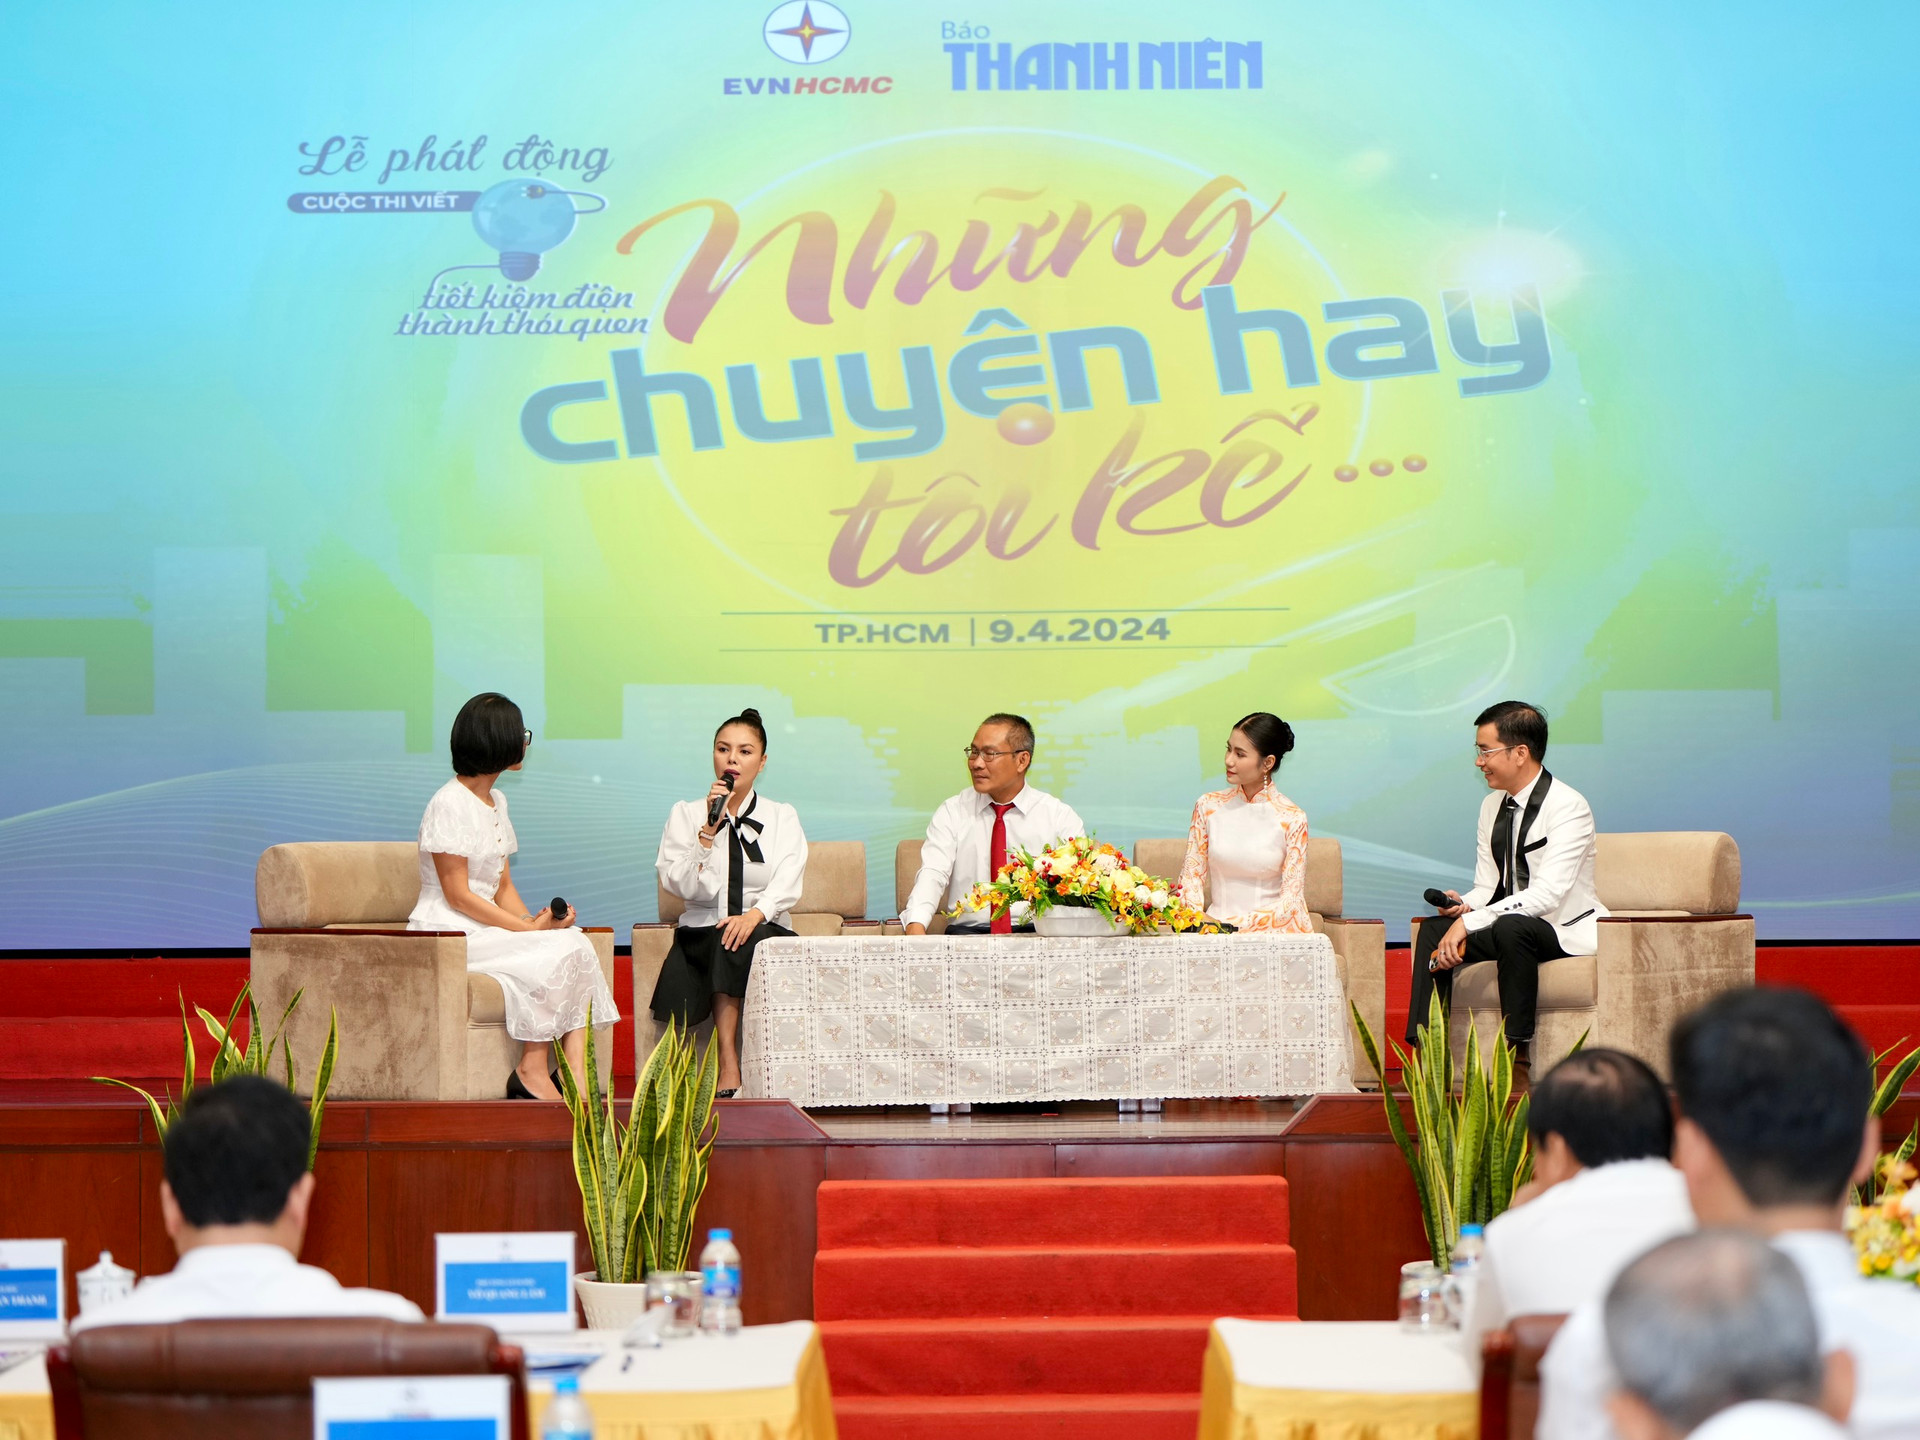 Hoa hậu Nguyễn Thanh Hà trở thành đại sứ, kêu gọi người dân tiết kiệm điện - Ảnh 1.